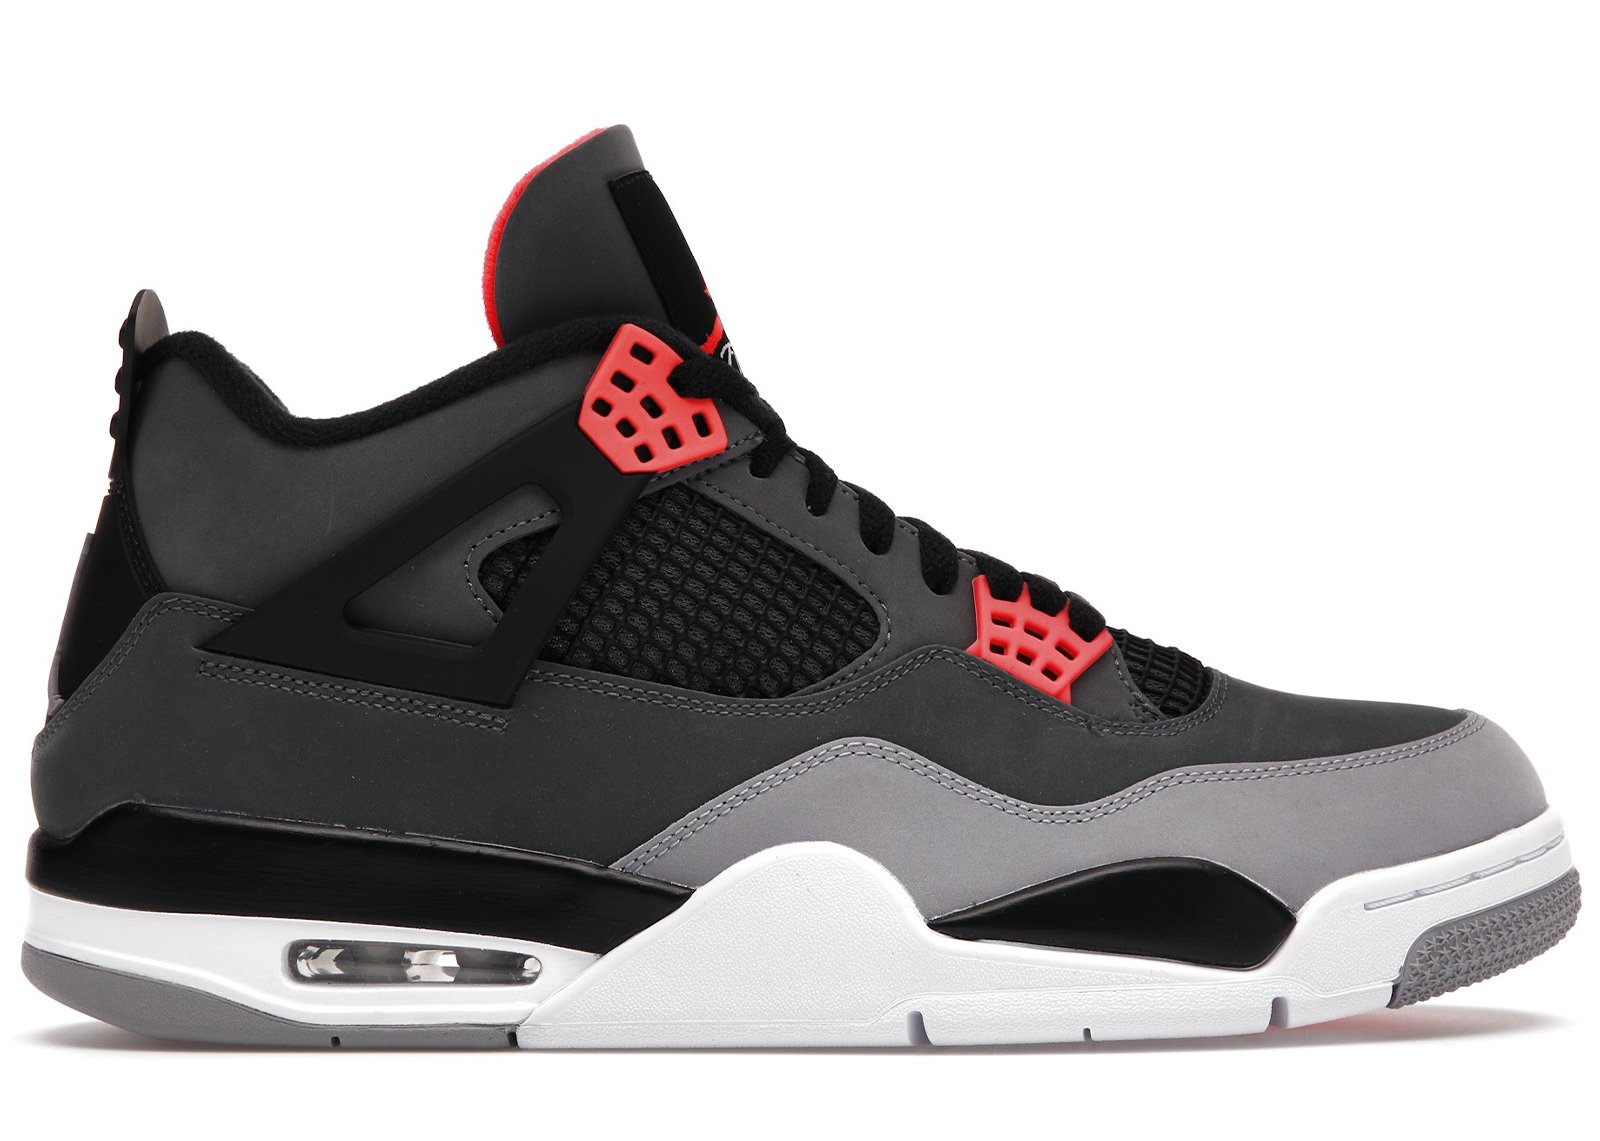 Jordan 4 Retro Infrared sneakers